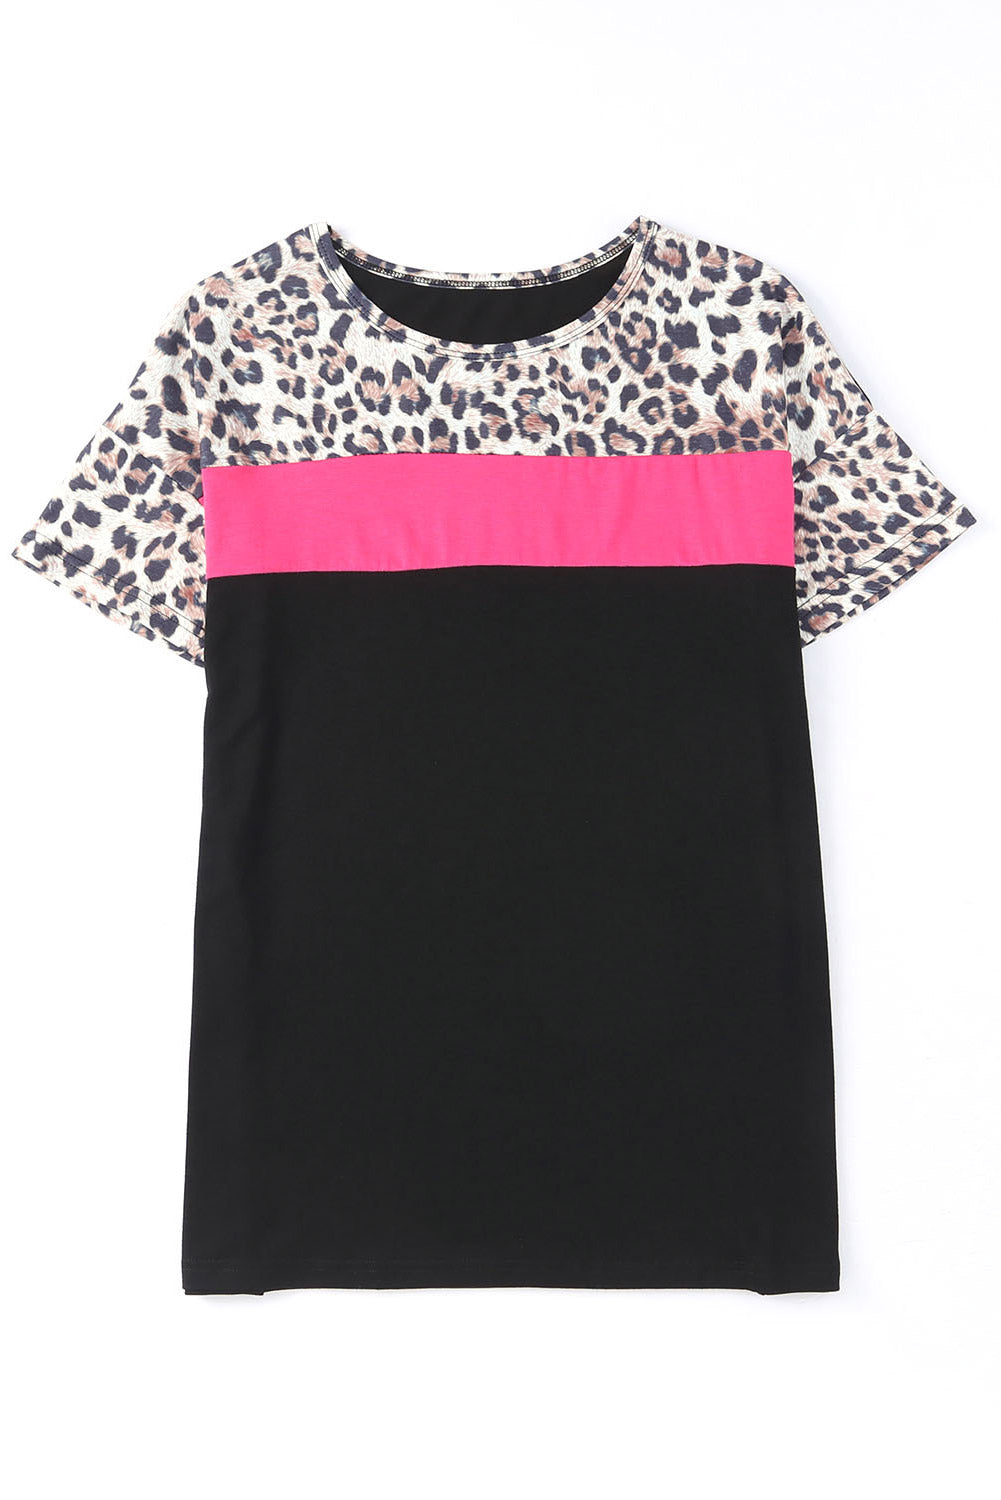 Leopard Colorblock Splicing T-shirt